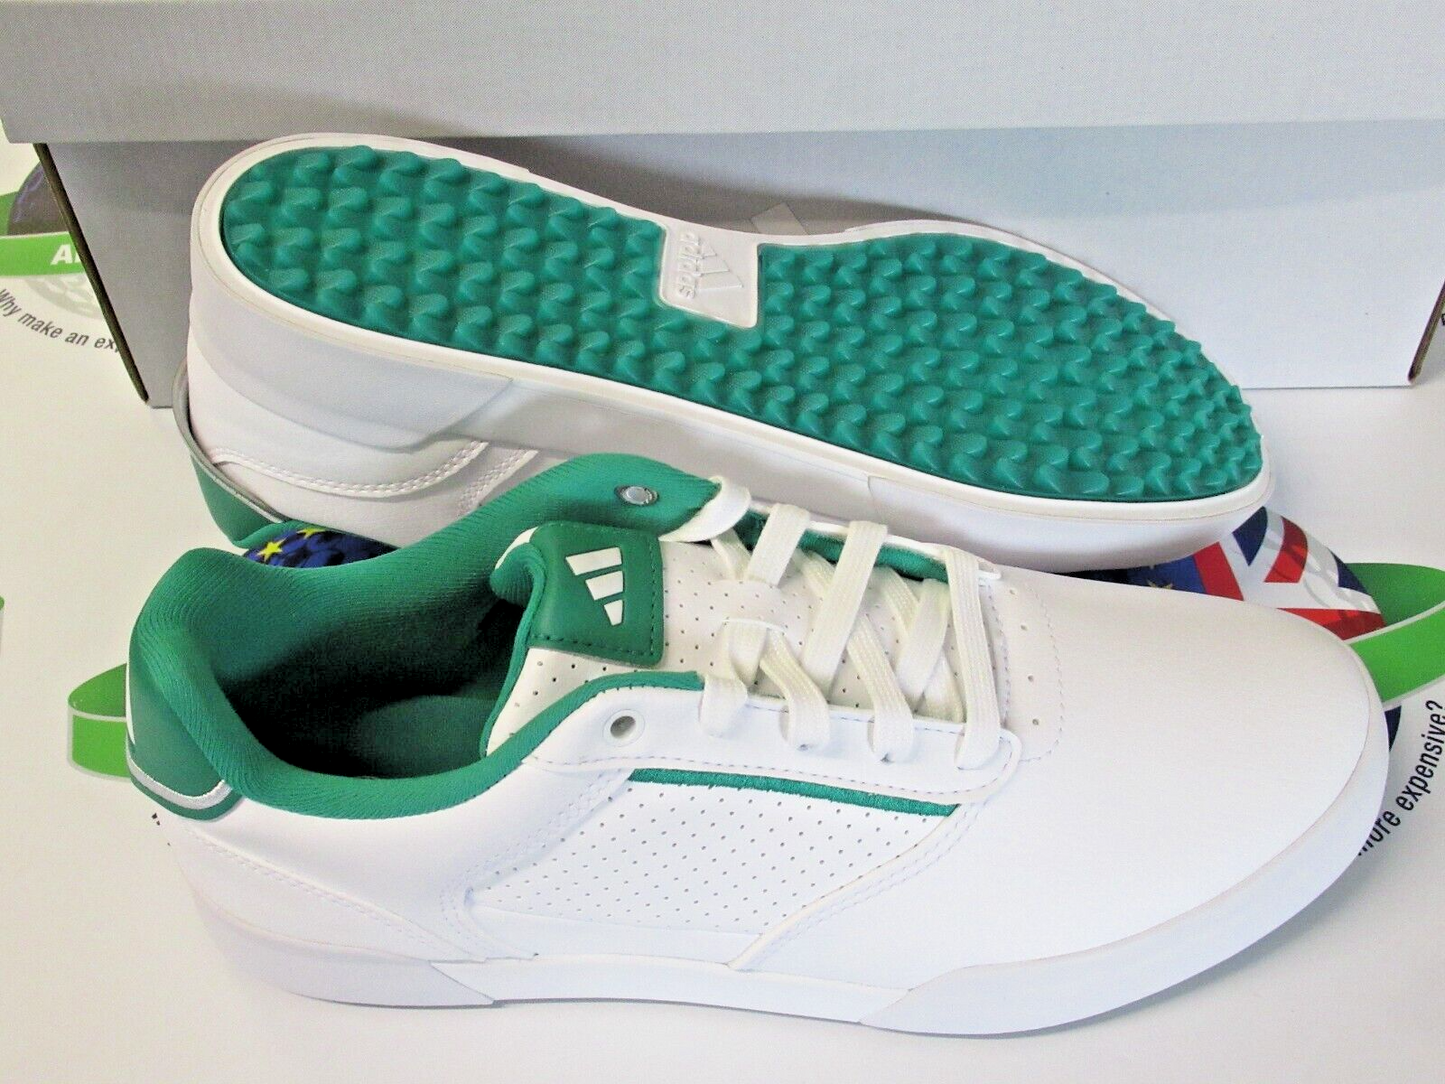 adidas retrocross white/green waterproof golf shoes uk size 12 wide